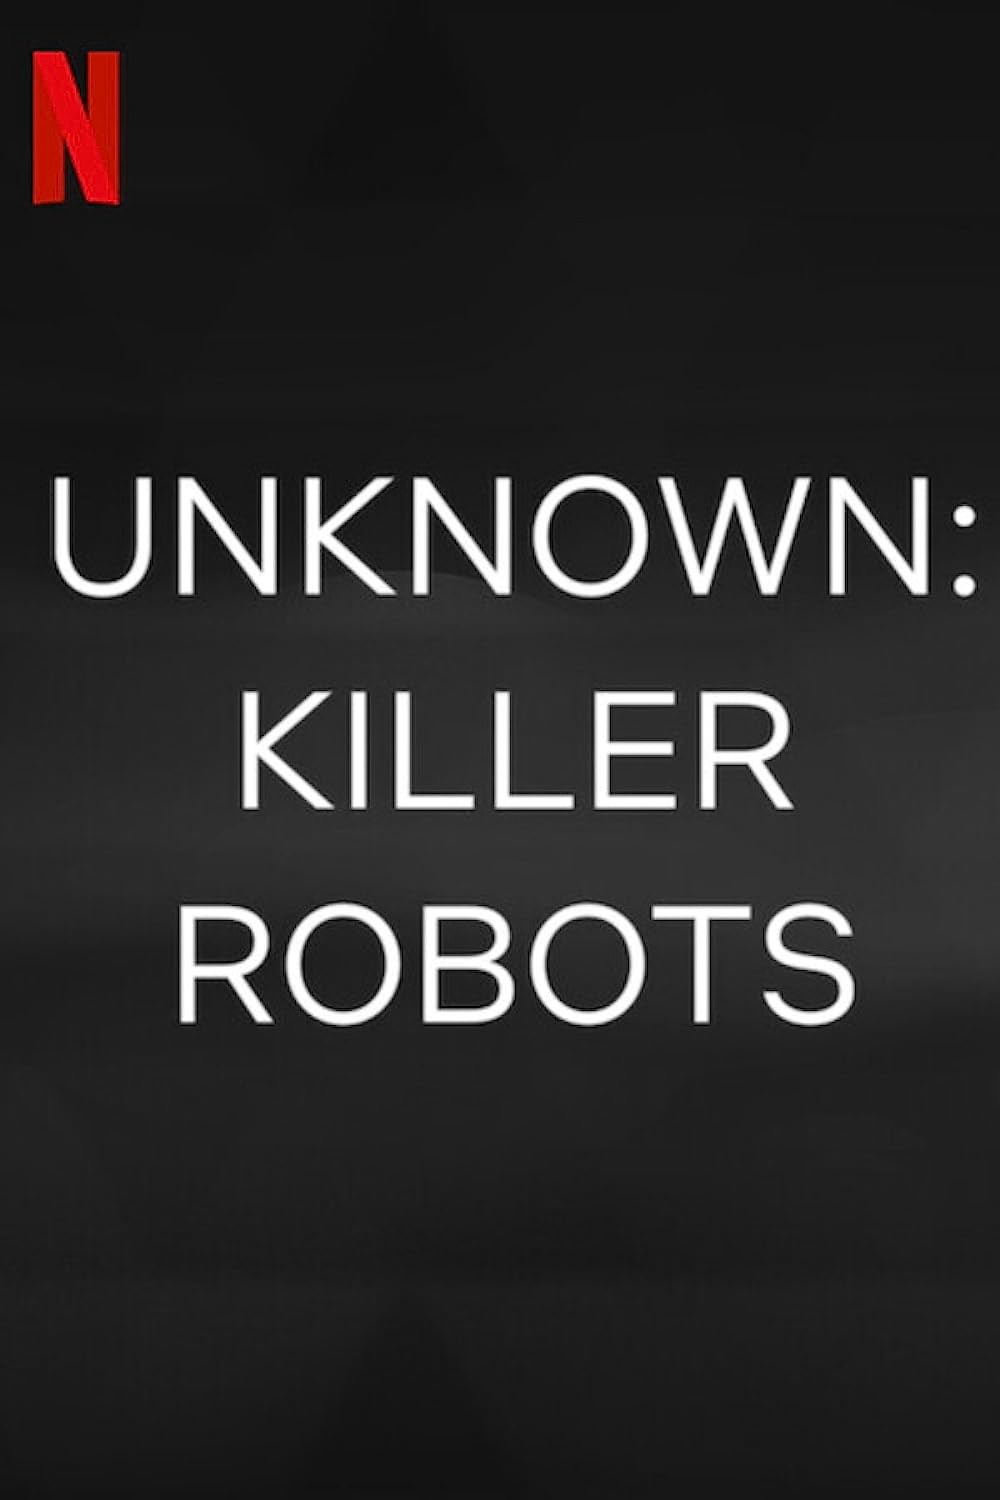 Ẩn số Trái đất: Robot sát nhân - Ẩn số Trái đất: Robot sát nhân